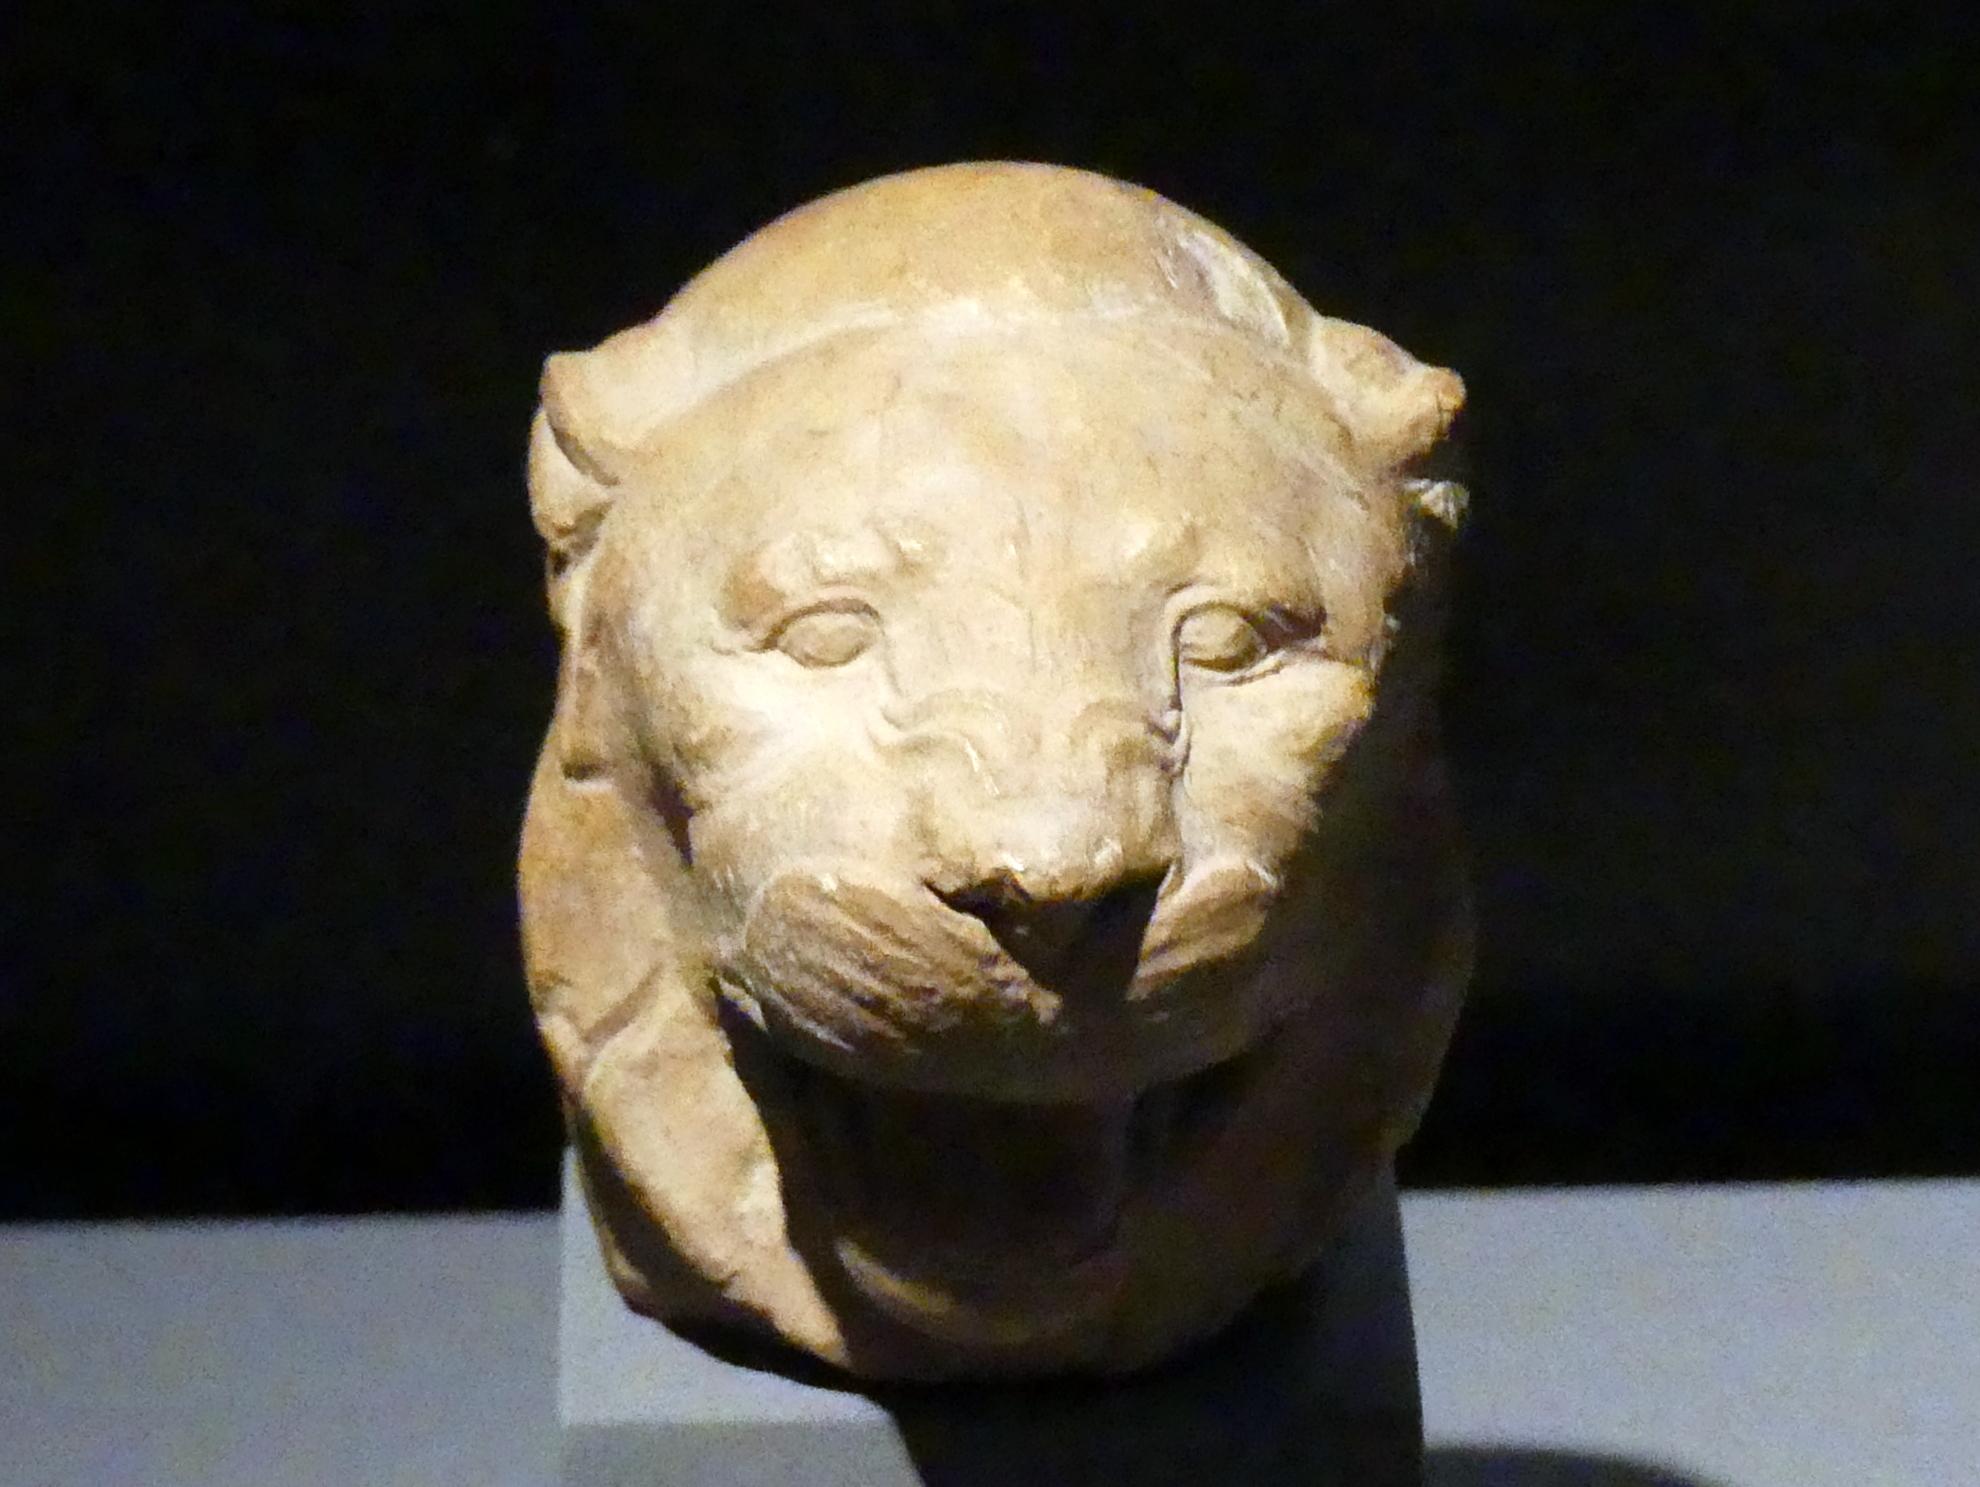 Bildhauermodell für einen Löwenkopf, Ptolemäische Zeit, 400 v. Chr. - 1 n. Chr., 300 - 200 v. Chr.